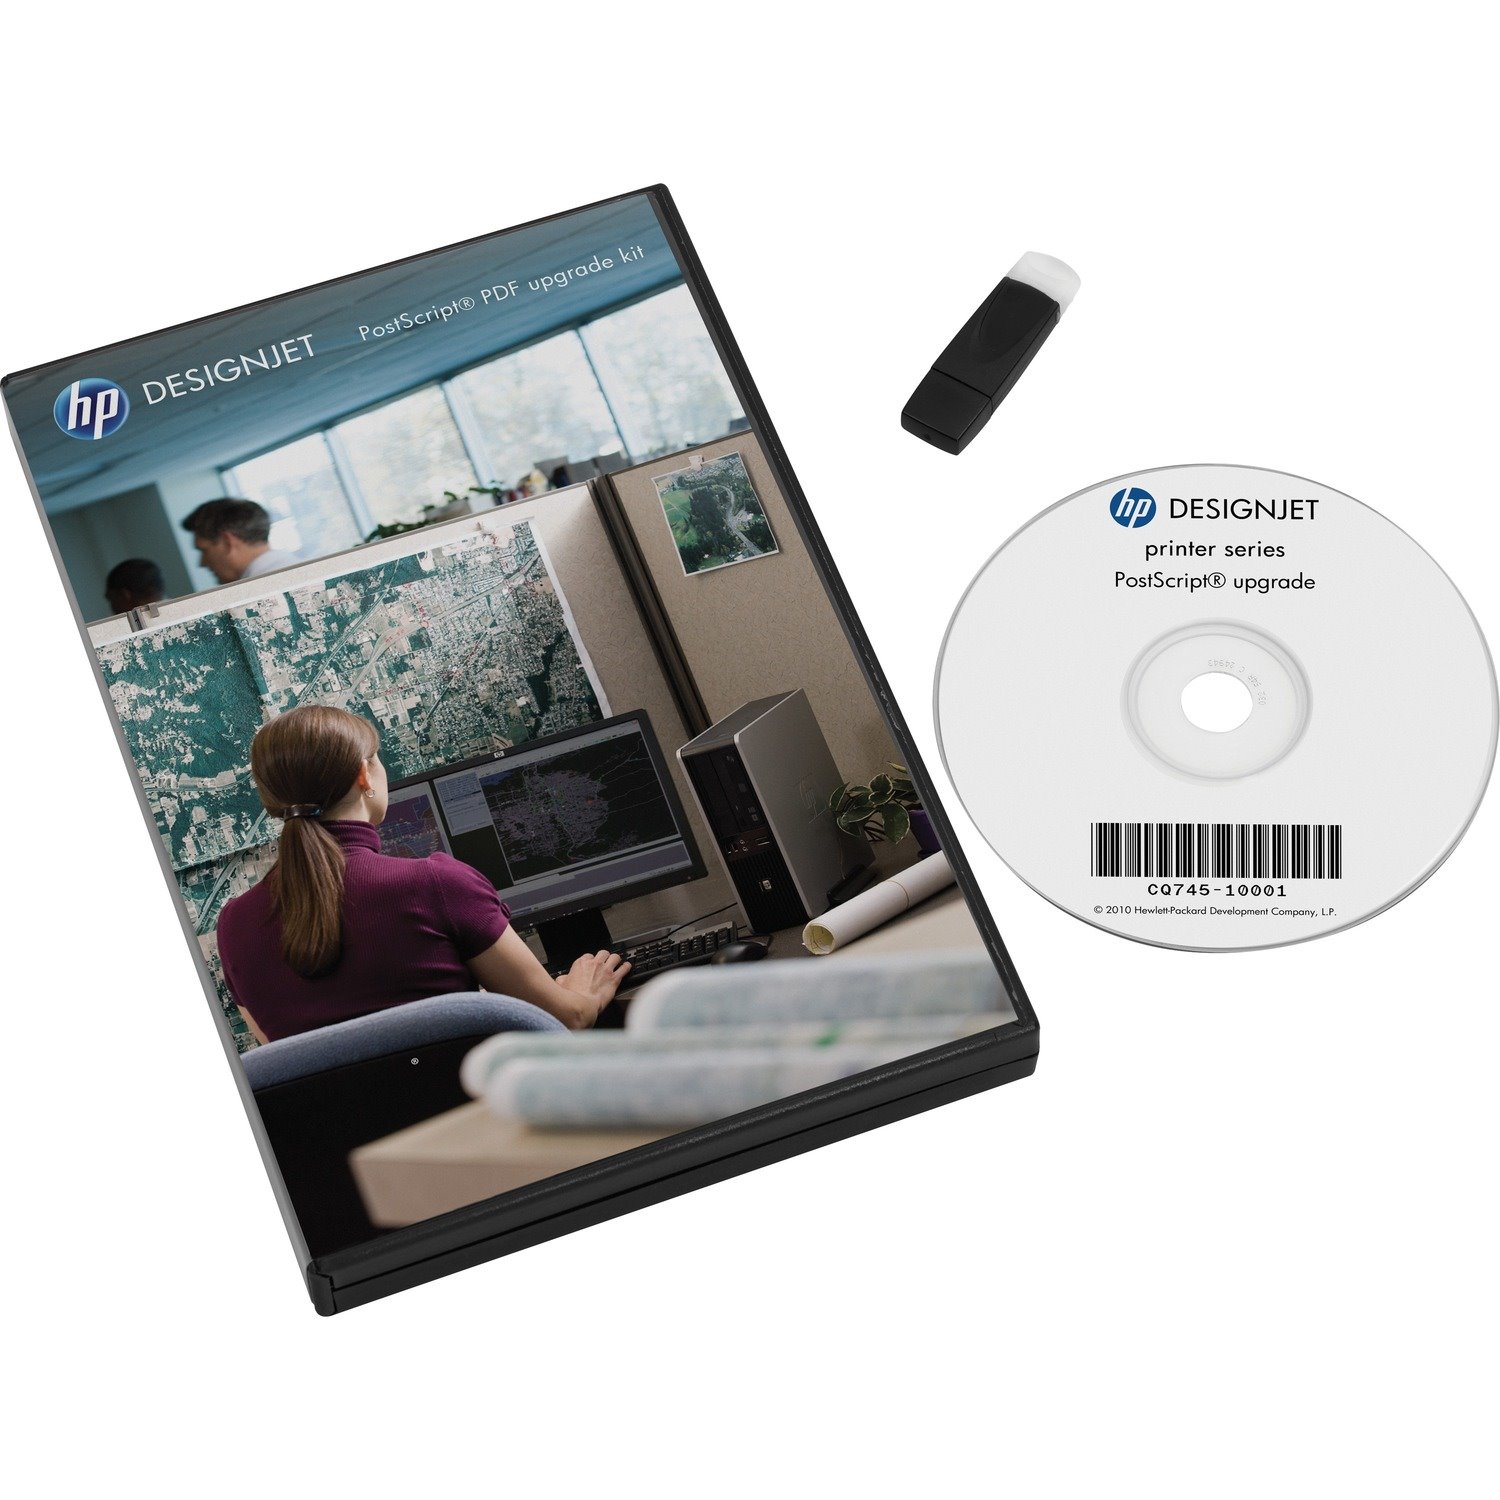 HP Designjet PostScript/PDF Upgrade Kit - Upgrade - CD Box Packing